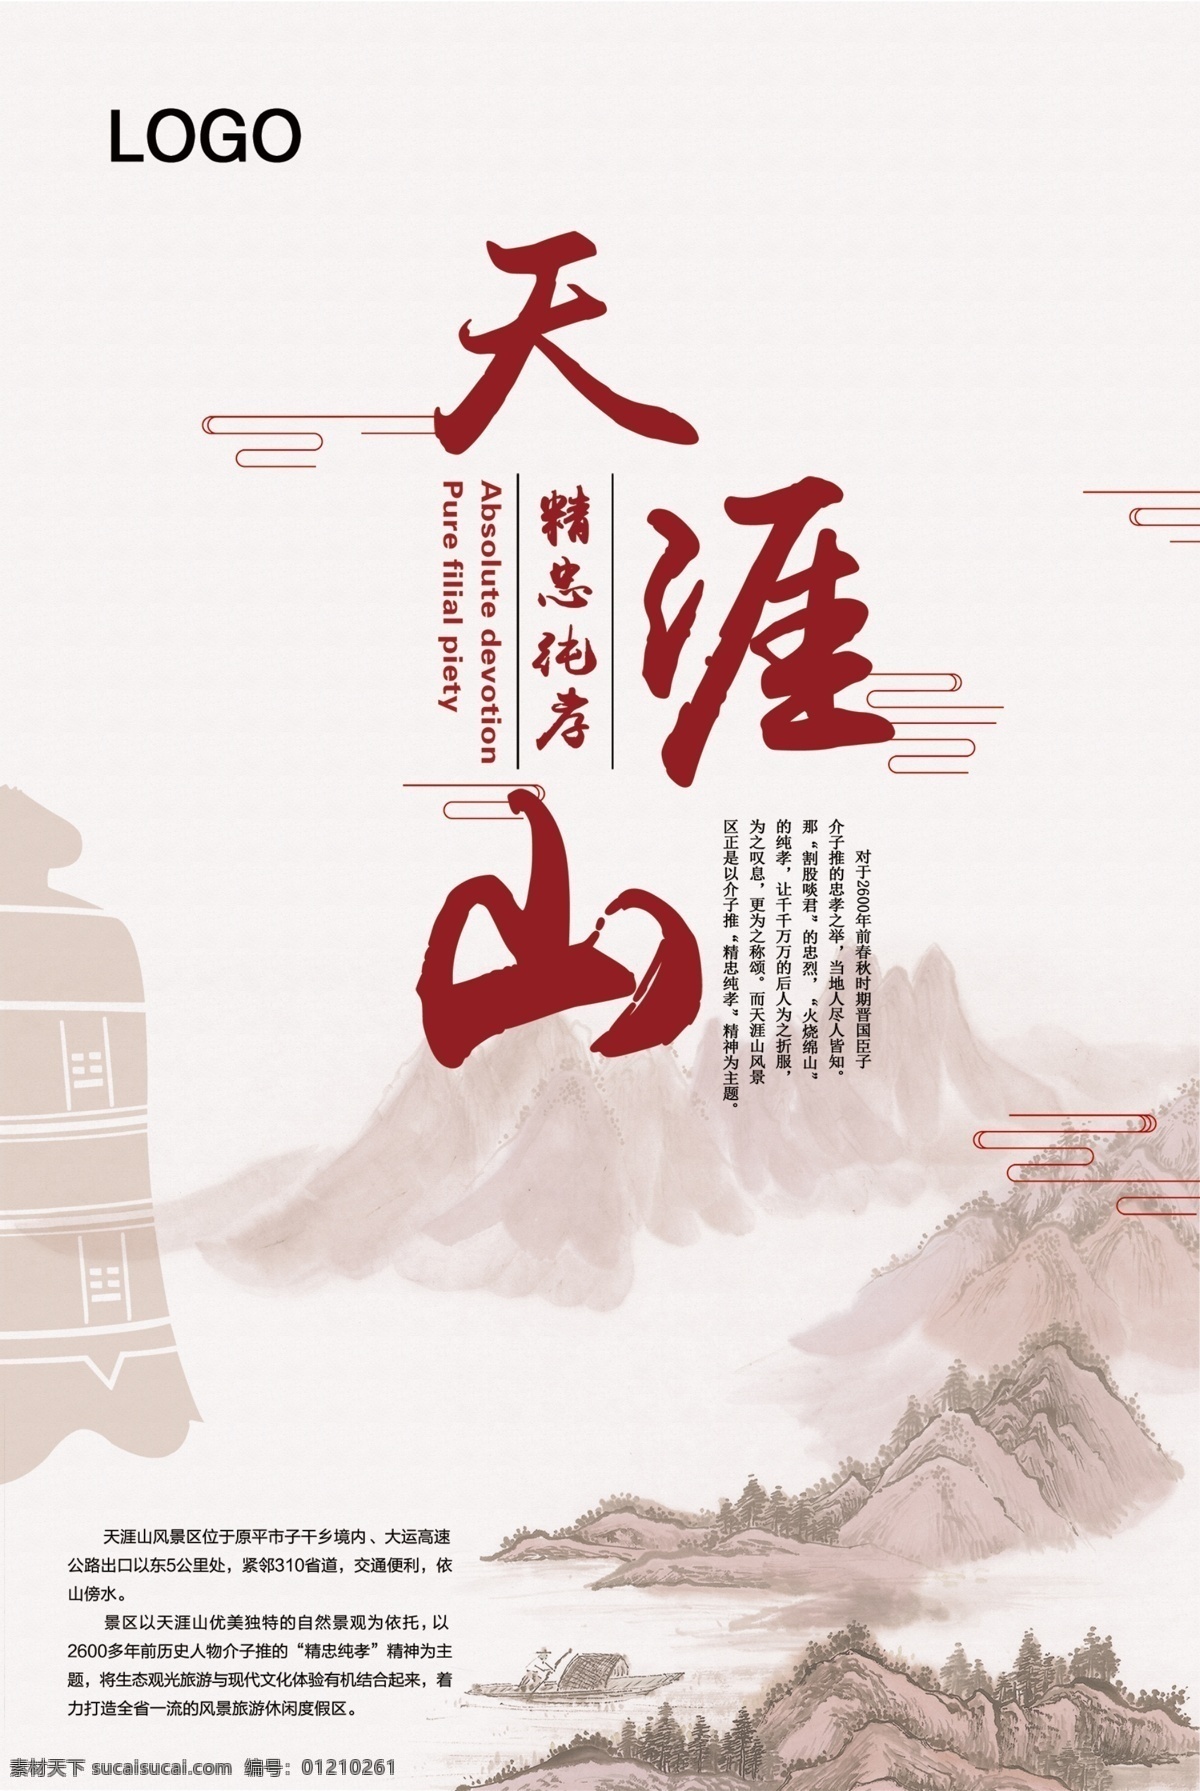 天涯山海报 中国风素材 中国风背景 中国风 分层素材 灰色素材 背景素材 分层